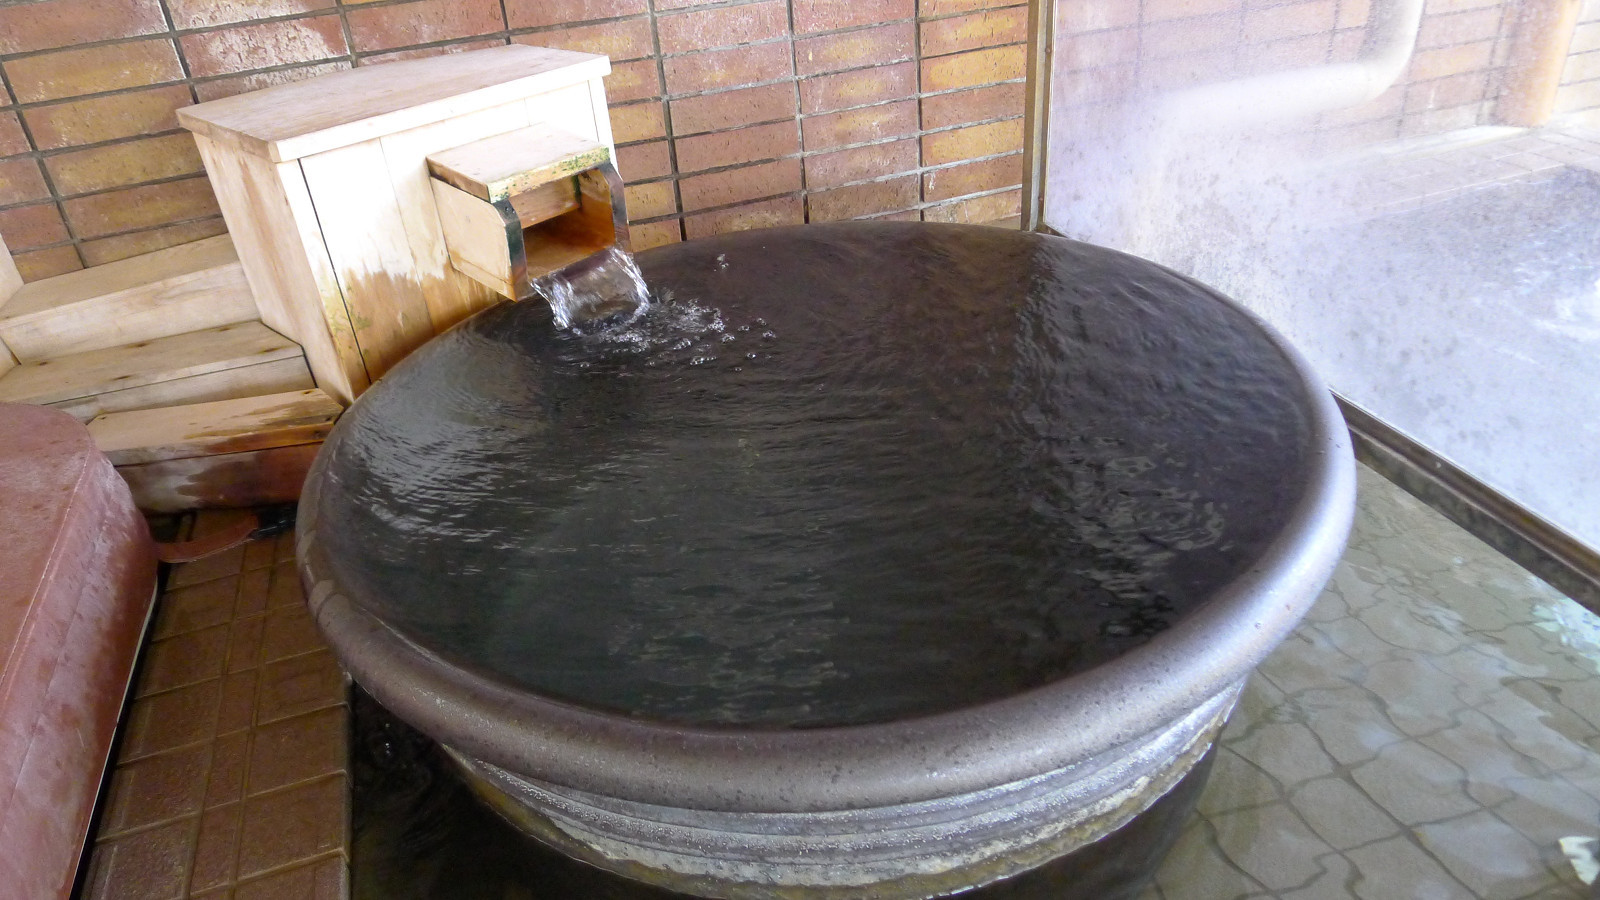 信楽焼陶器風呂